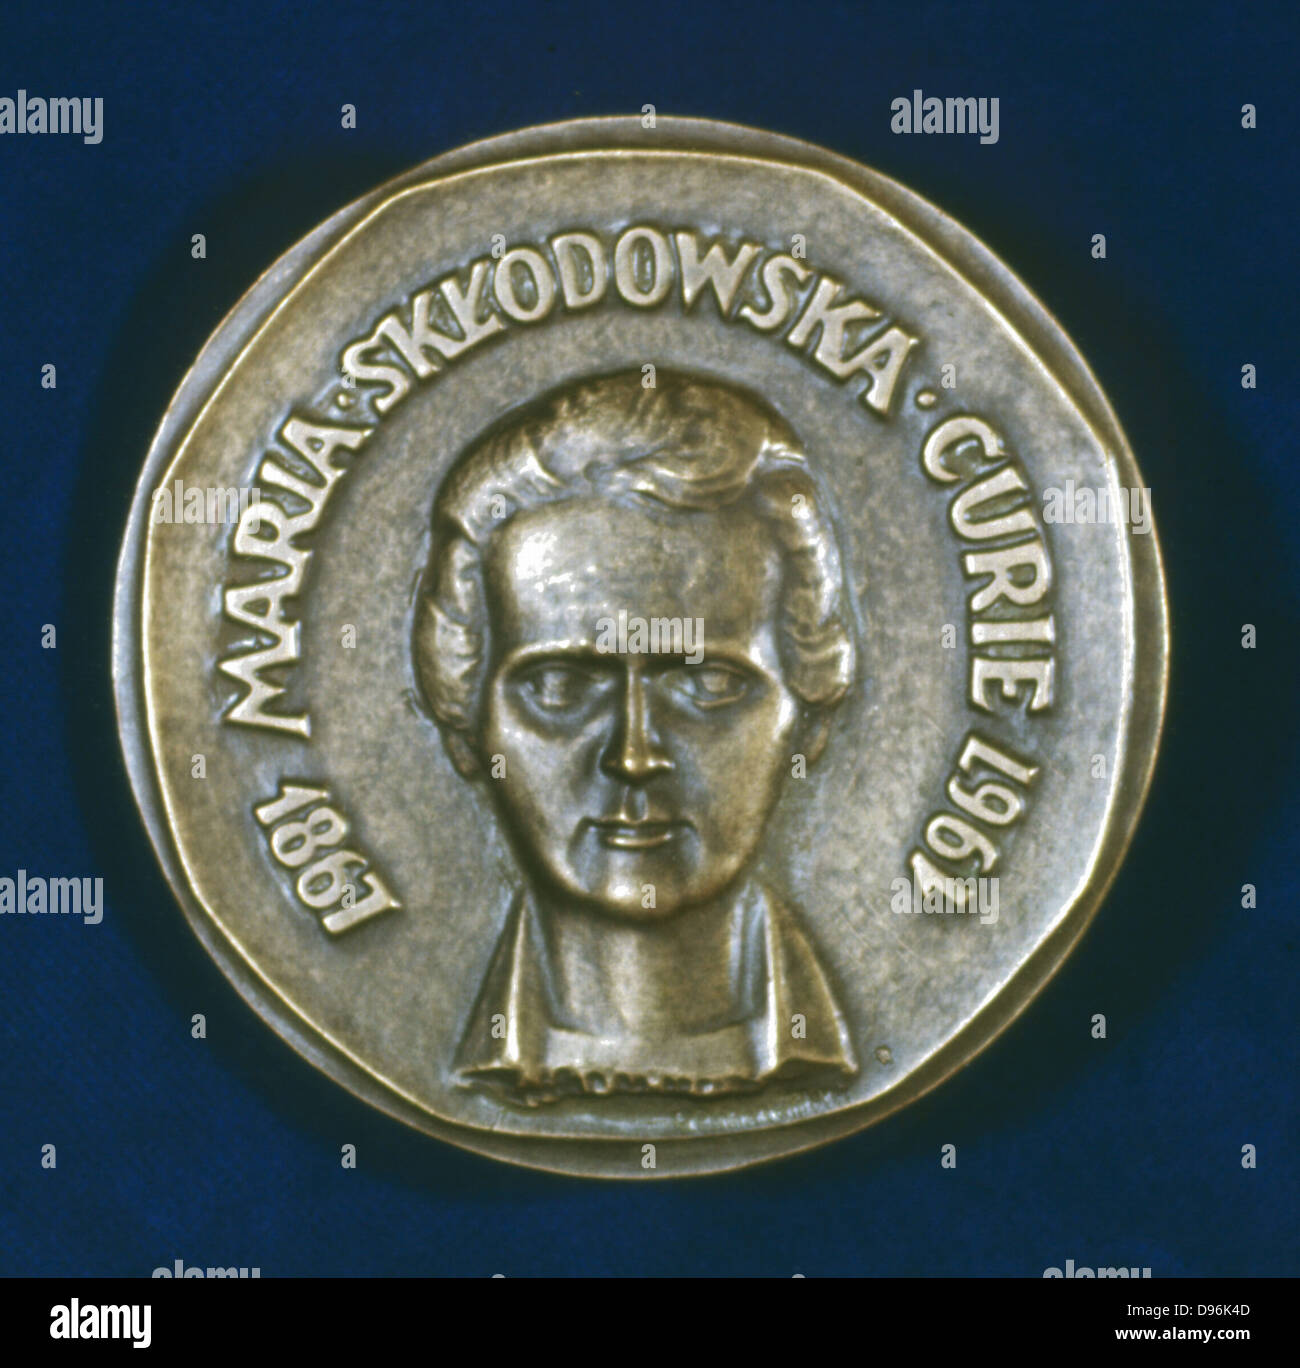 Marie Sklodowska Curie (1867-1934) in Polen geborenen französischen Physiker. Vorderseite der Medaille 1967 erteilt den 100. Jahrestag ihrer Geburt zu gedenken. Stockfoto